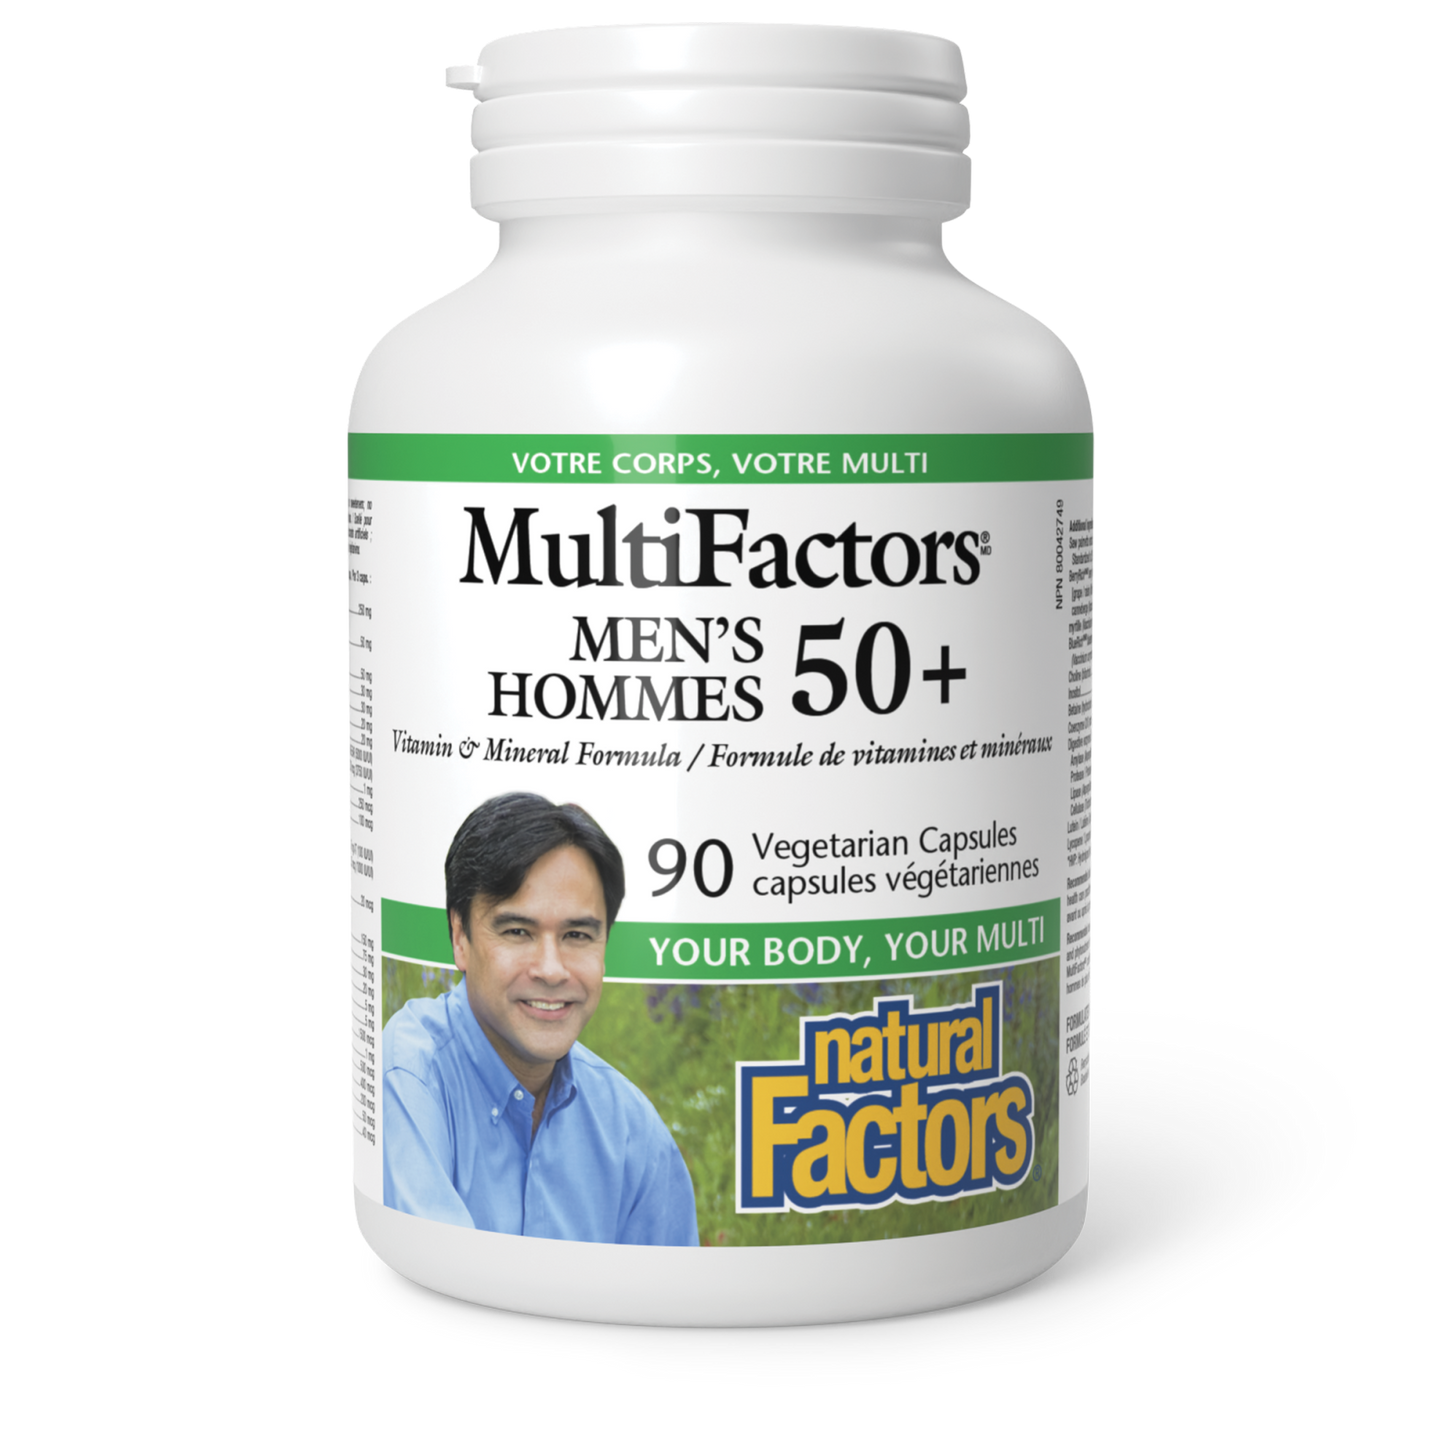 Hommes 50+, MultiFactors, Natural Factors|v|image|1591